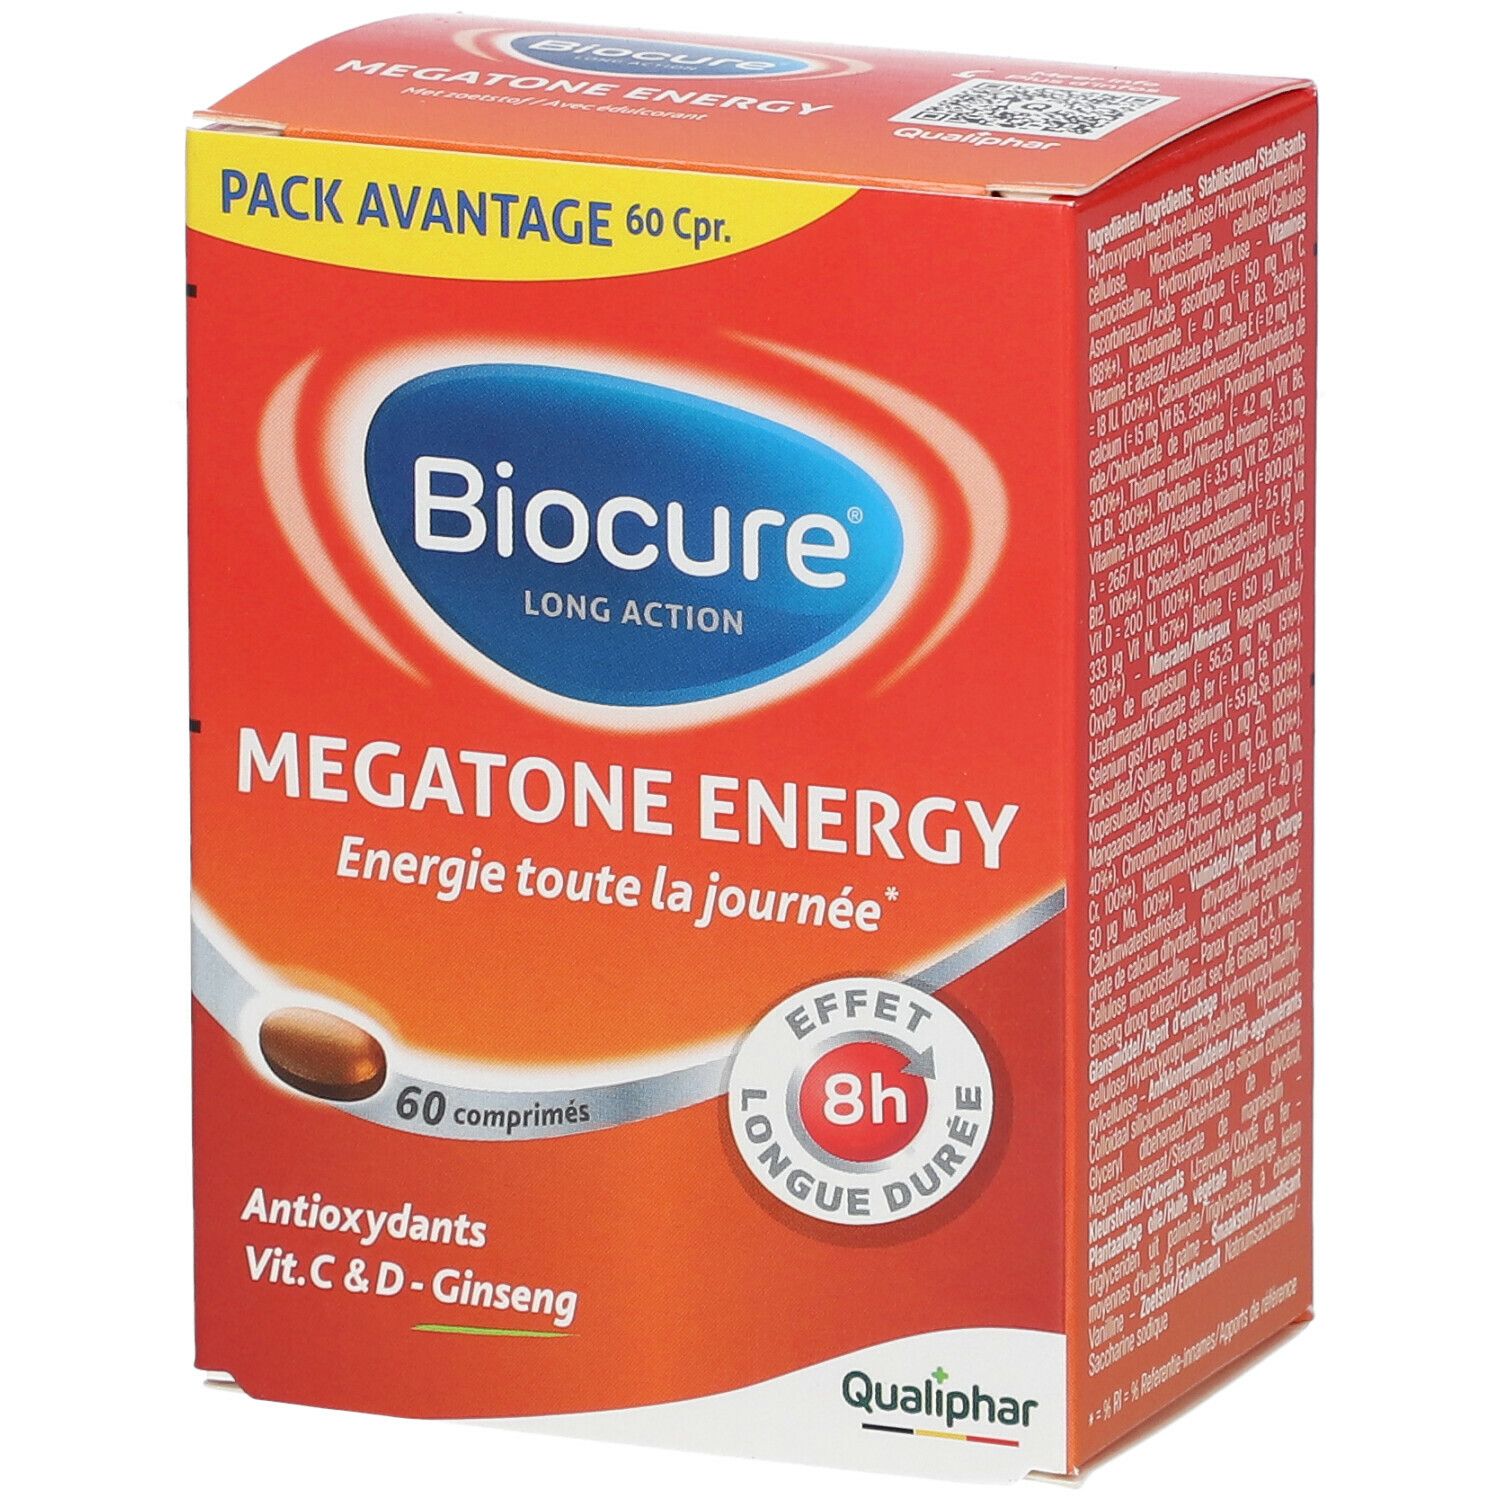 Biocure® Long Action Megatone Energy